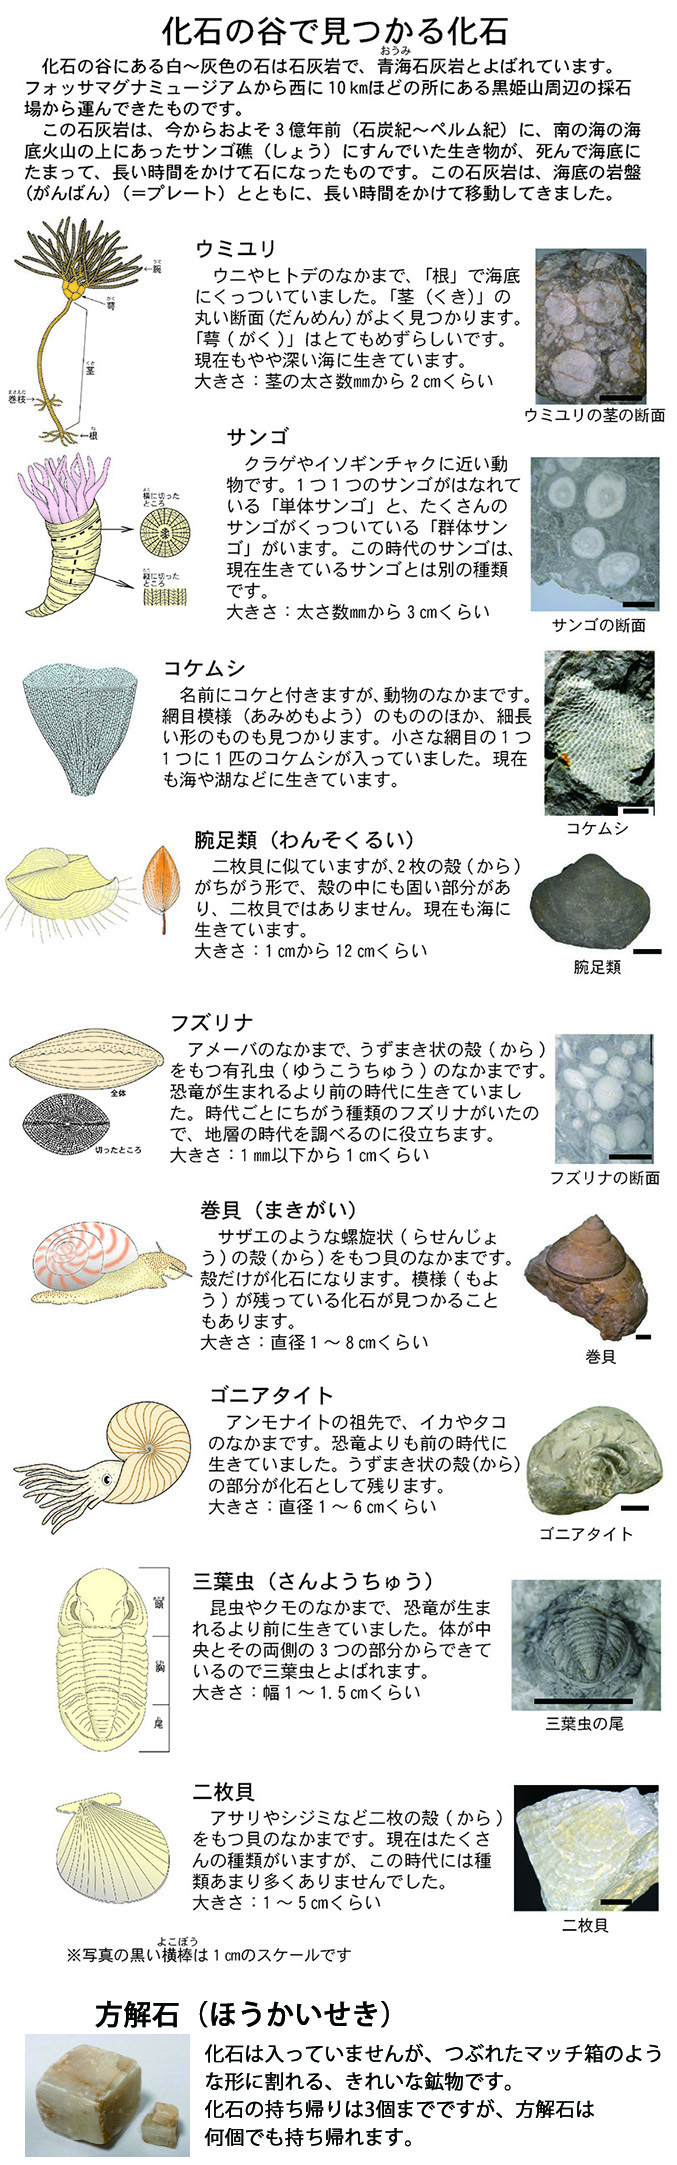 化石の谷 フォッサマグナミュージアム Fossa Magna Museum 新潟県